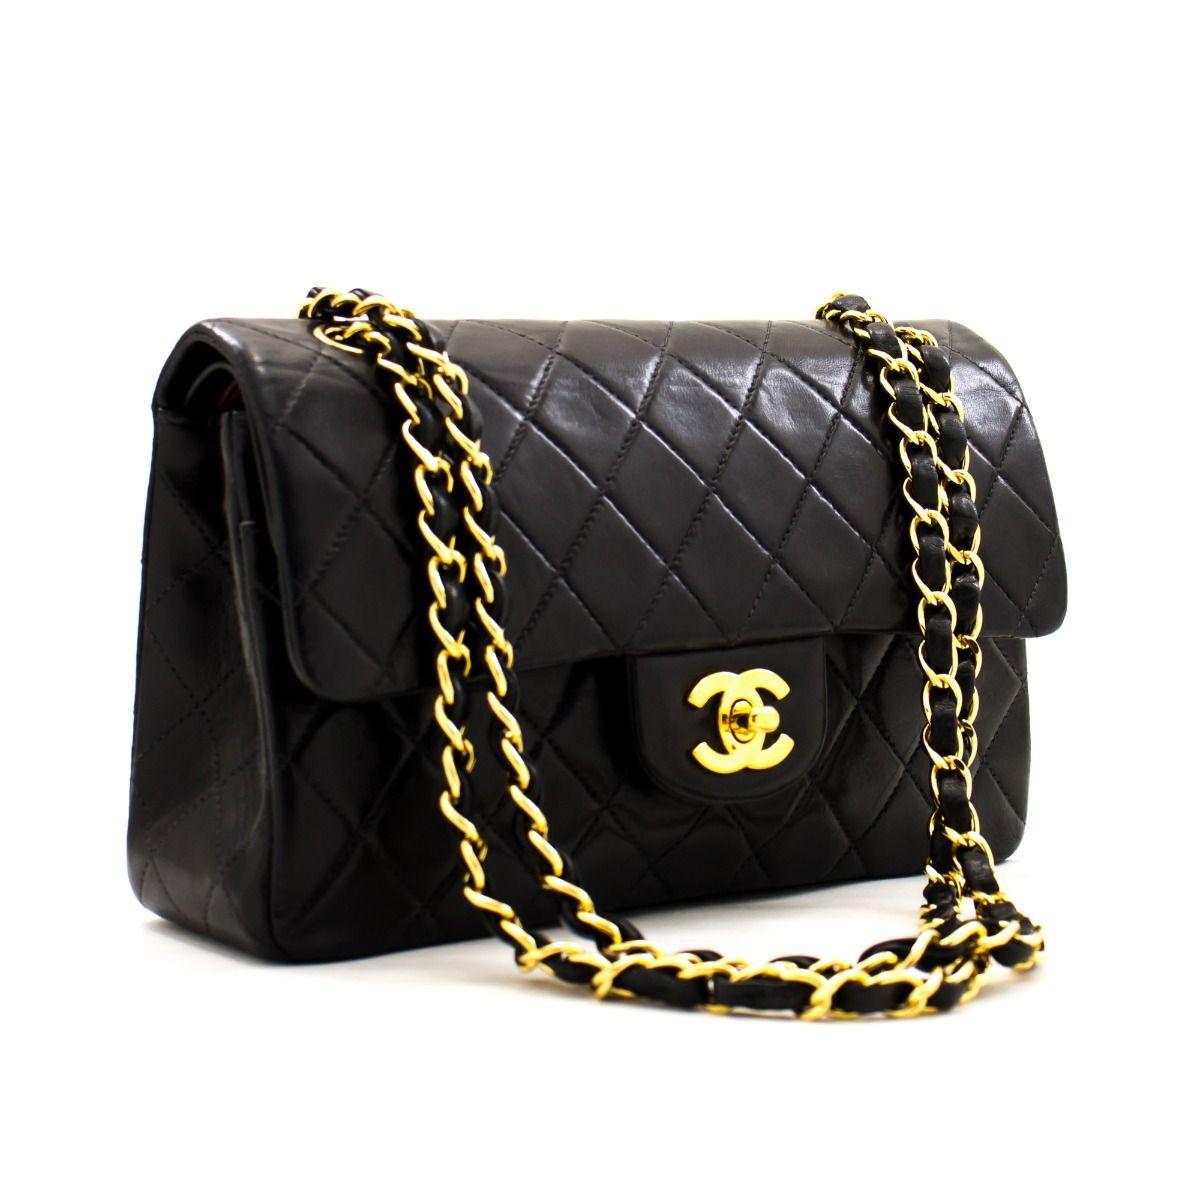 Diese kultige 9''-Tasche von Chanel ist aus gestepptem schwarzem Lammleder gefertigt und mit einer doppelten Klappe versehen. Auf der vorderen Klappe befindet sich der klassische CC-Logo-Drehverschluss, auf der zweiten Klappe ein